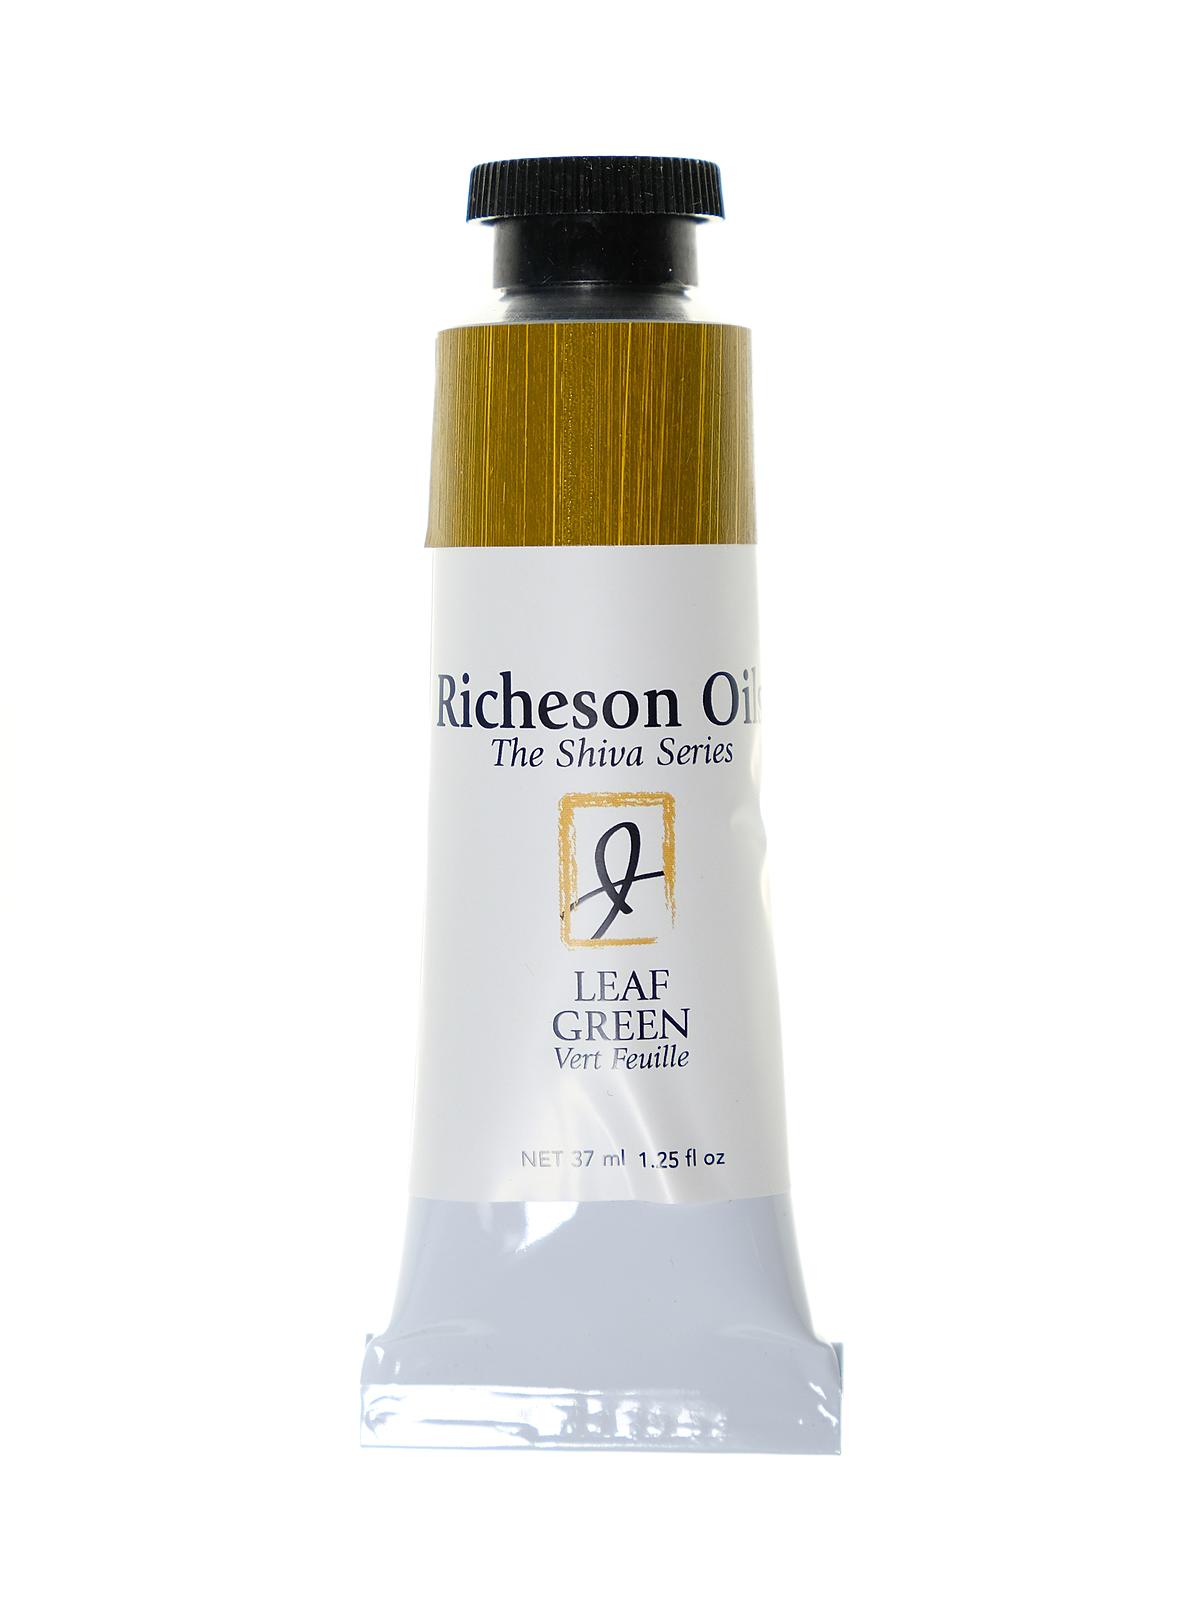 Richeson Oils The Shiva Series Leaf Green 1.25 Oz. Tube